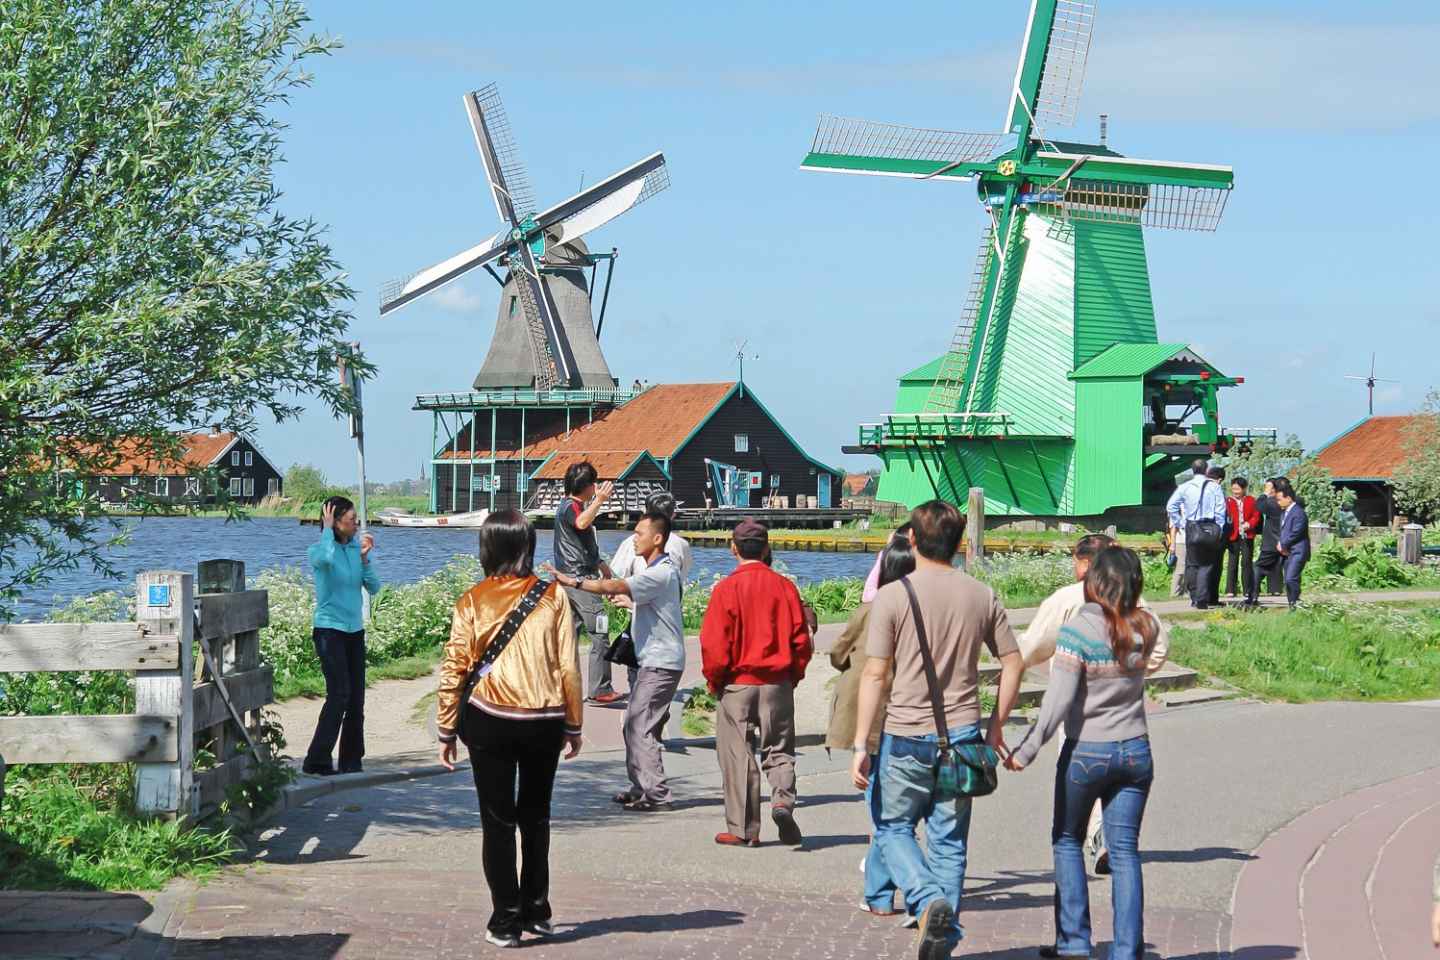 Ab Amsterdam: Windmühlen von Zaanse Schans